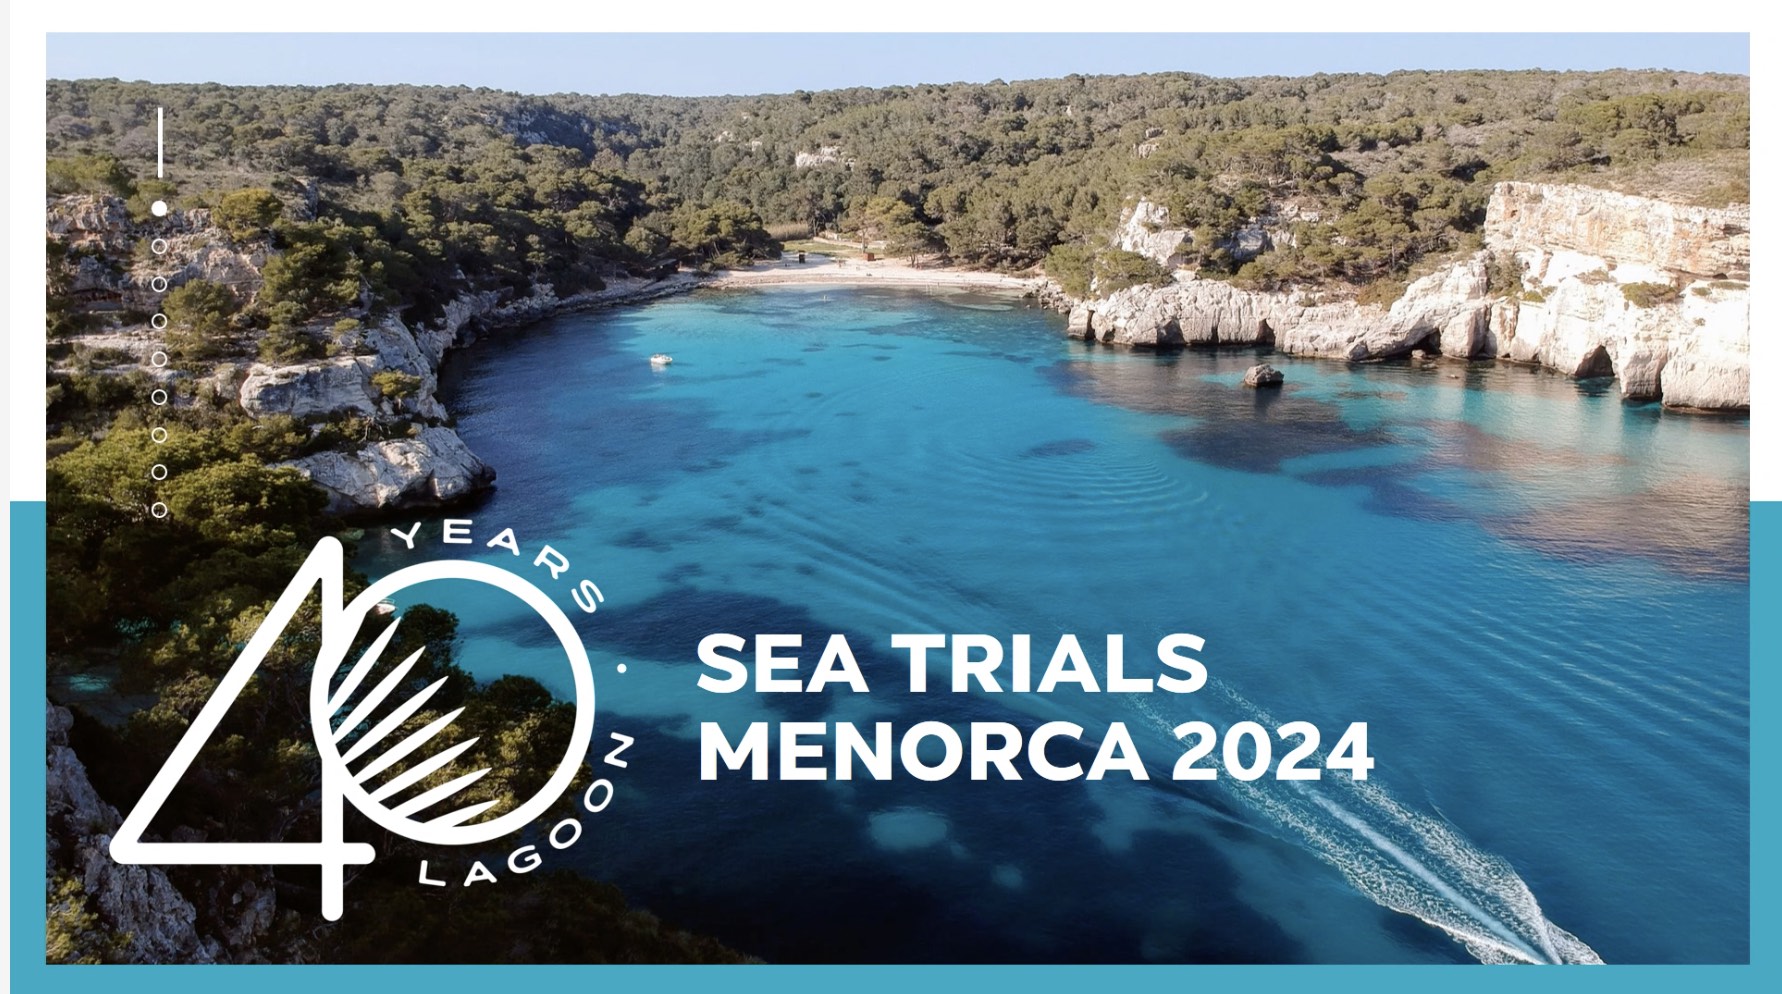 Lagoon Sea trials Menorca 2024